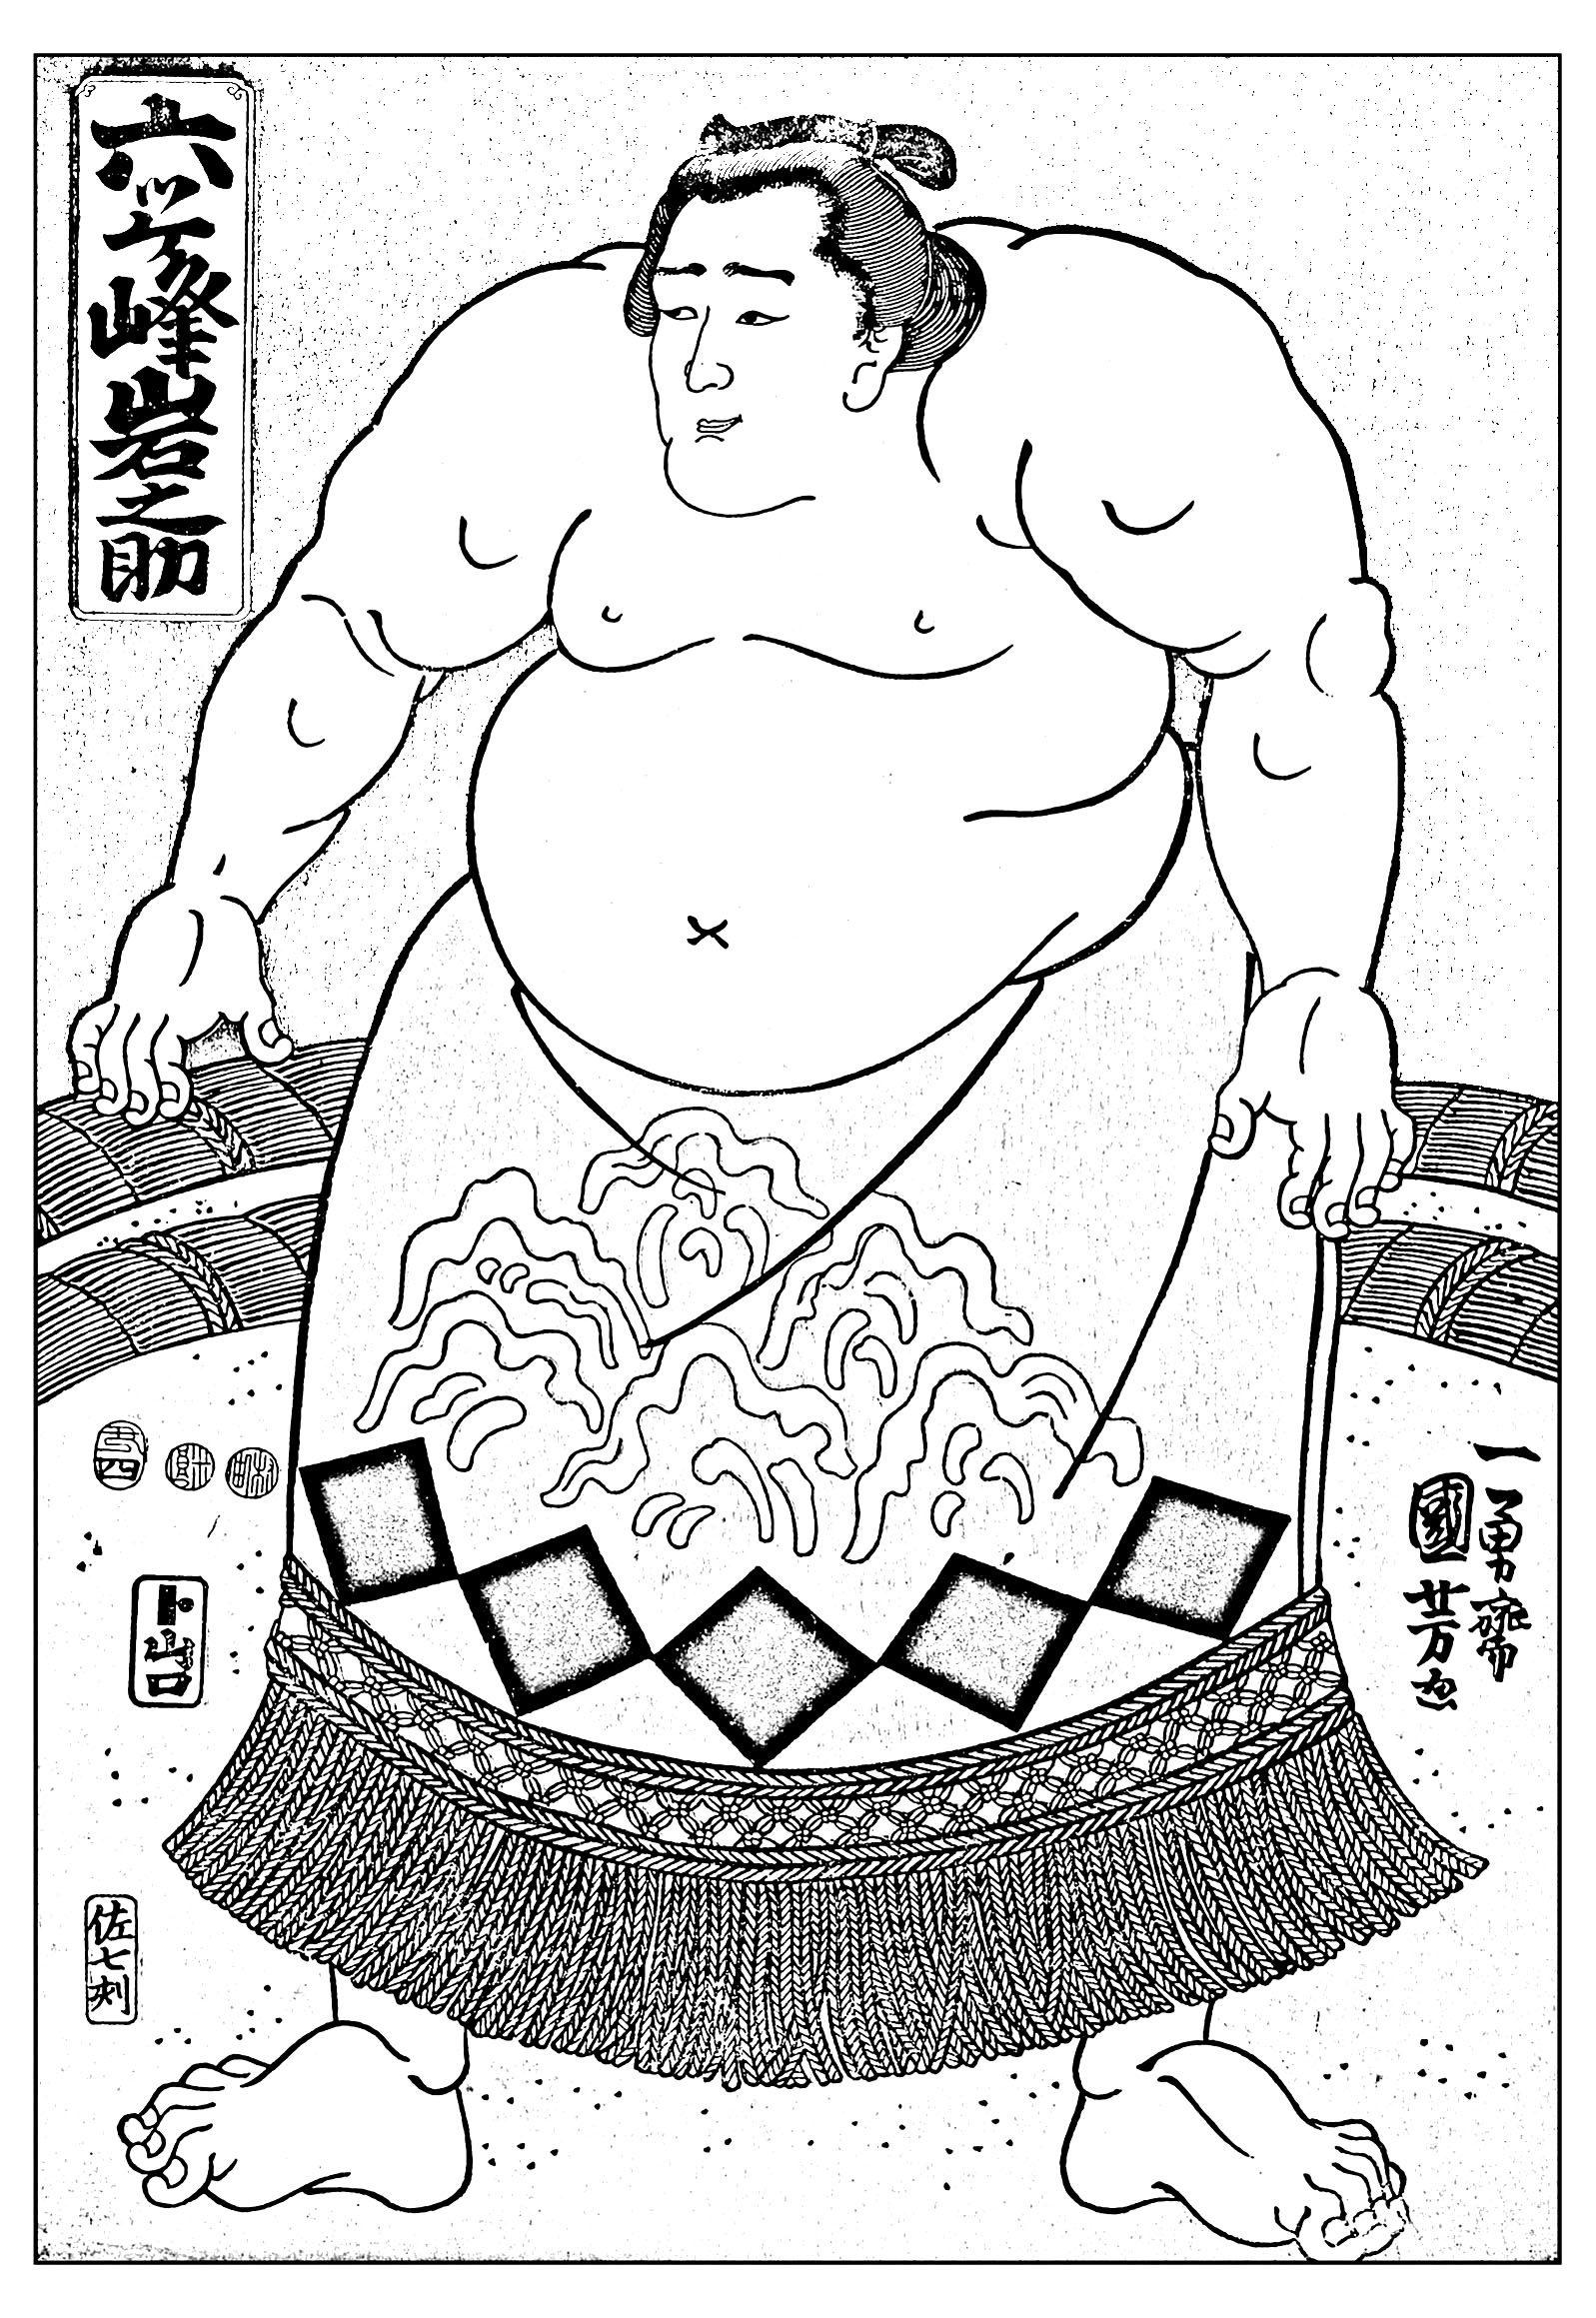 2 image=japon coloriage japon sumo kuniyoshi utagawa 1